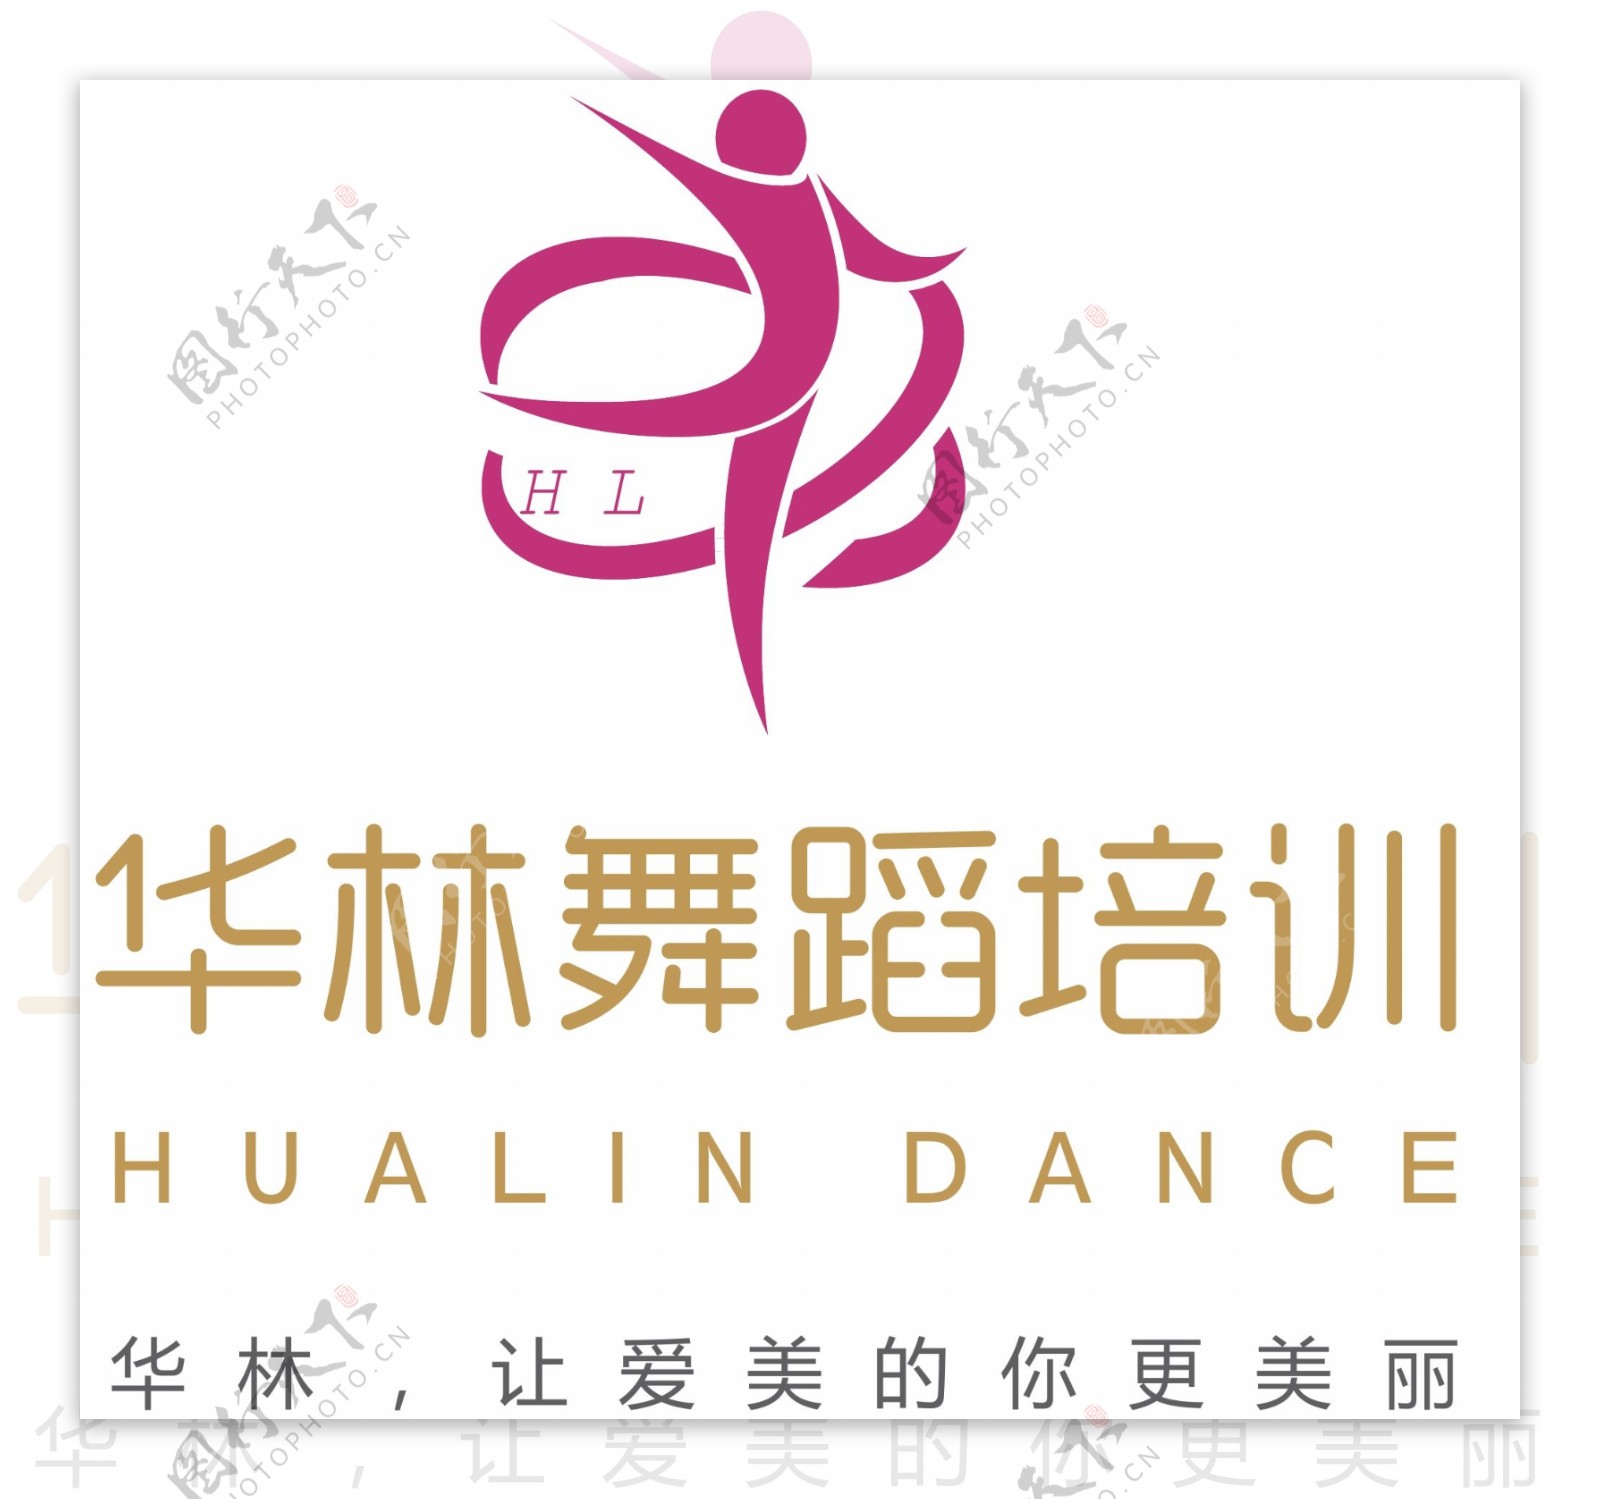 瑜伽舞蹈钢管舞培训标志logo